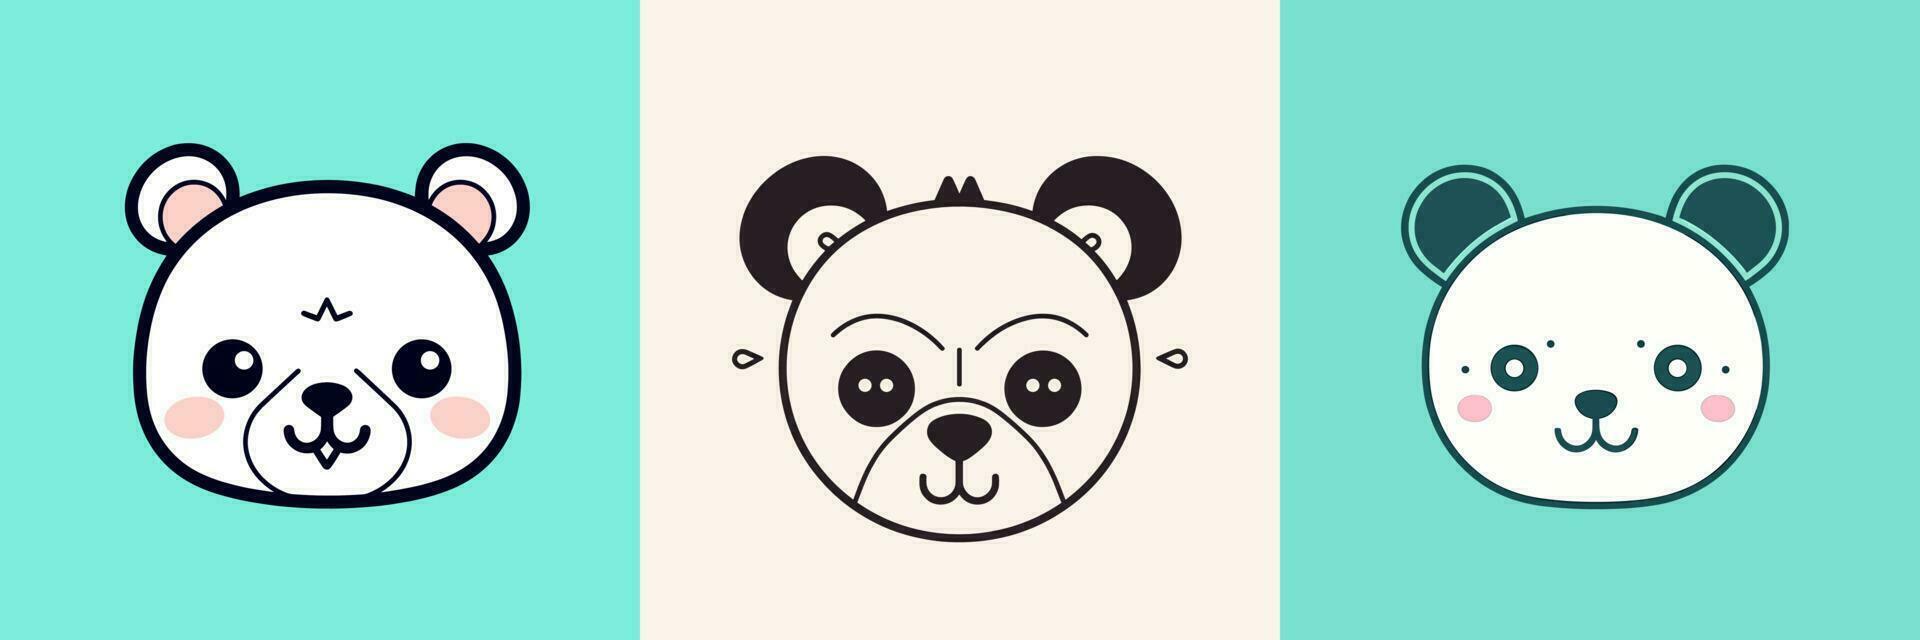 Cute kawaii panda cartoon illustration vector